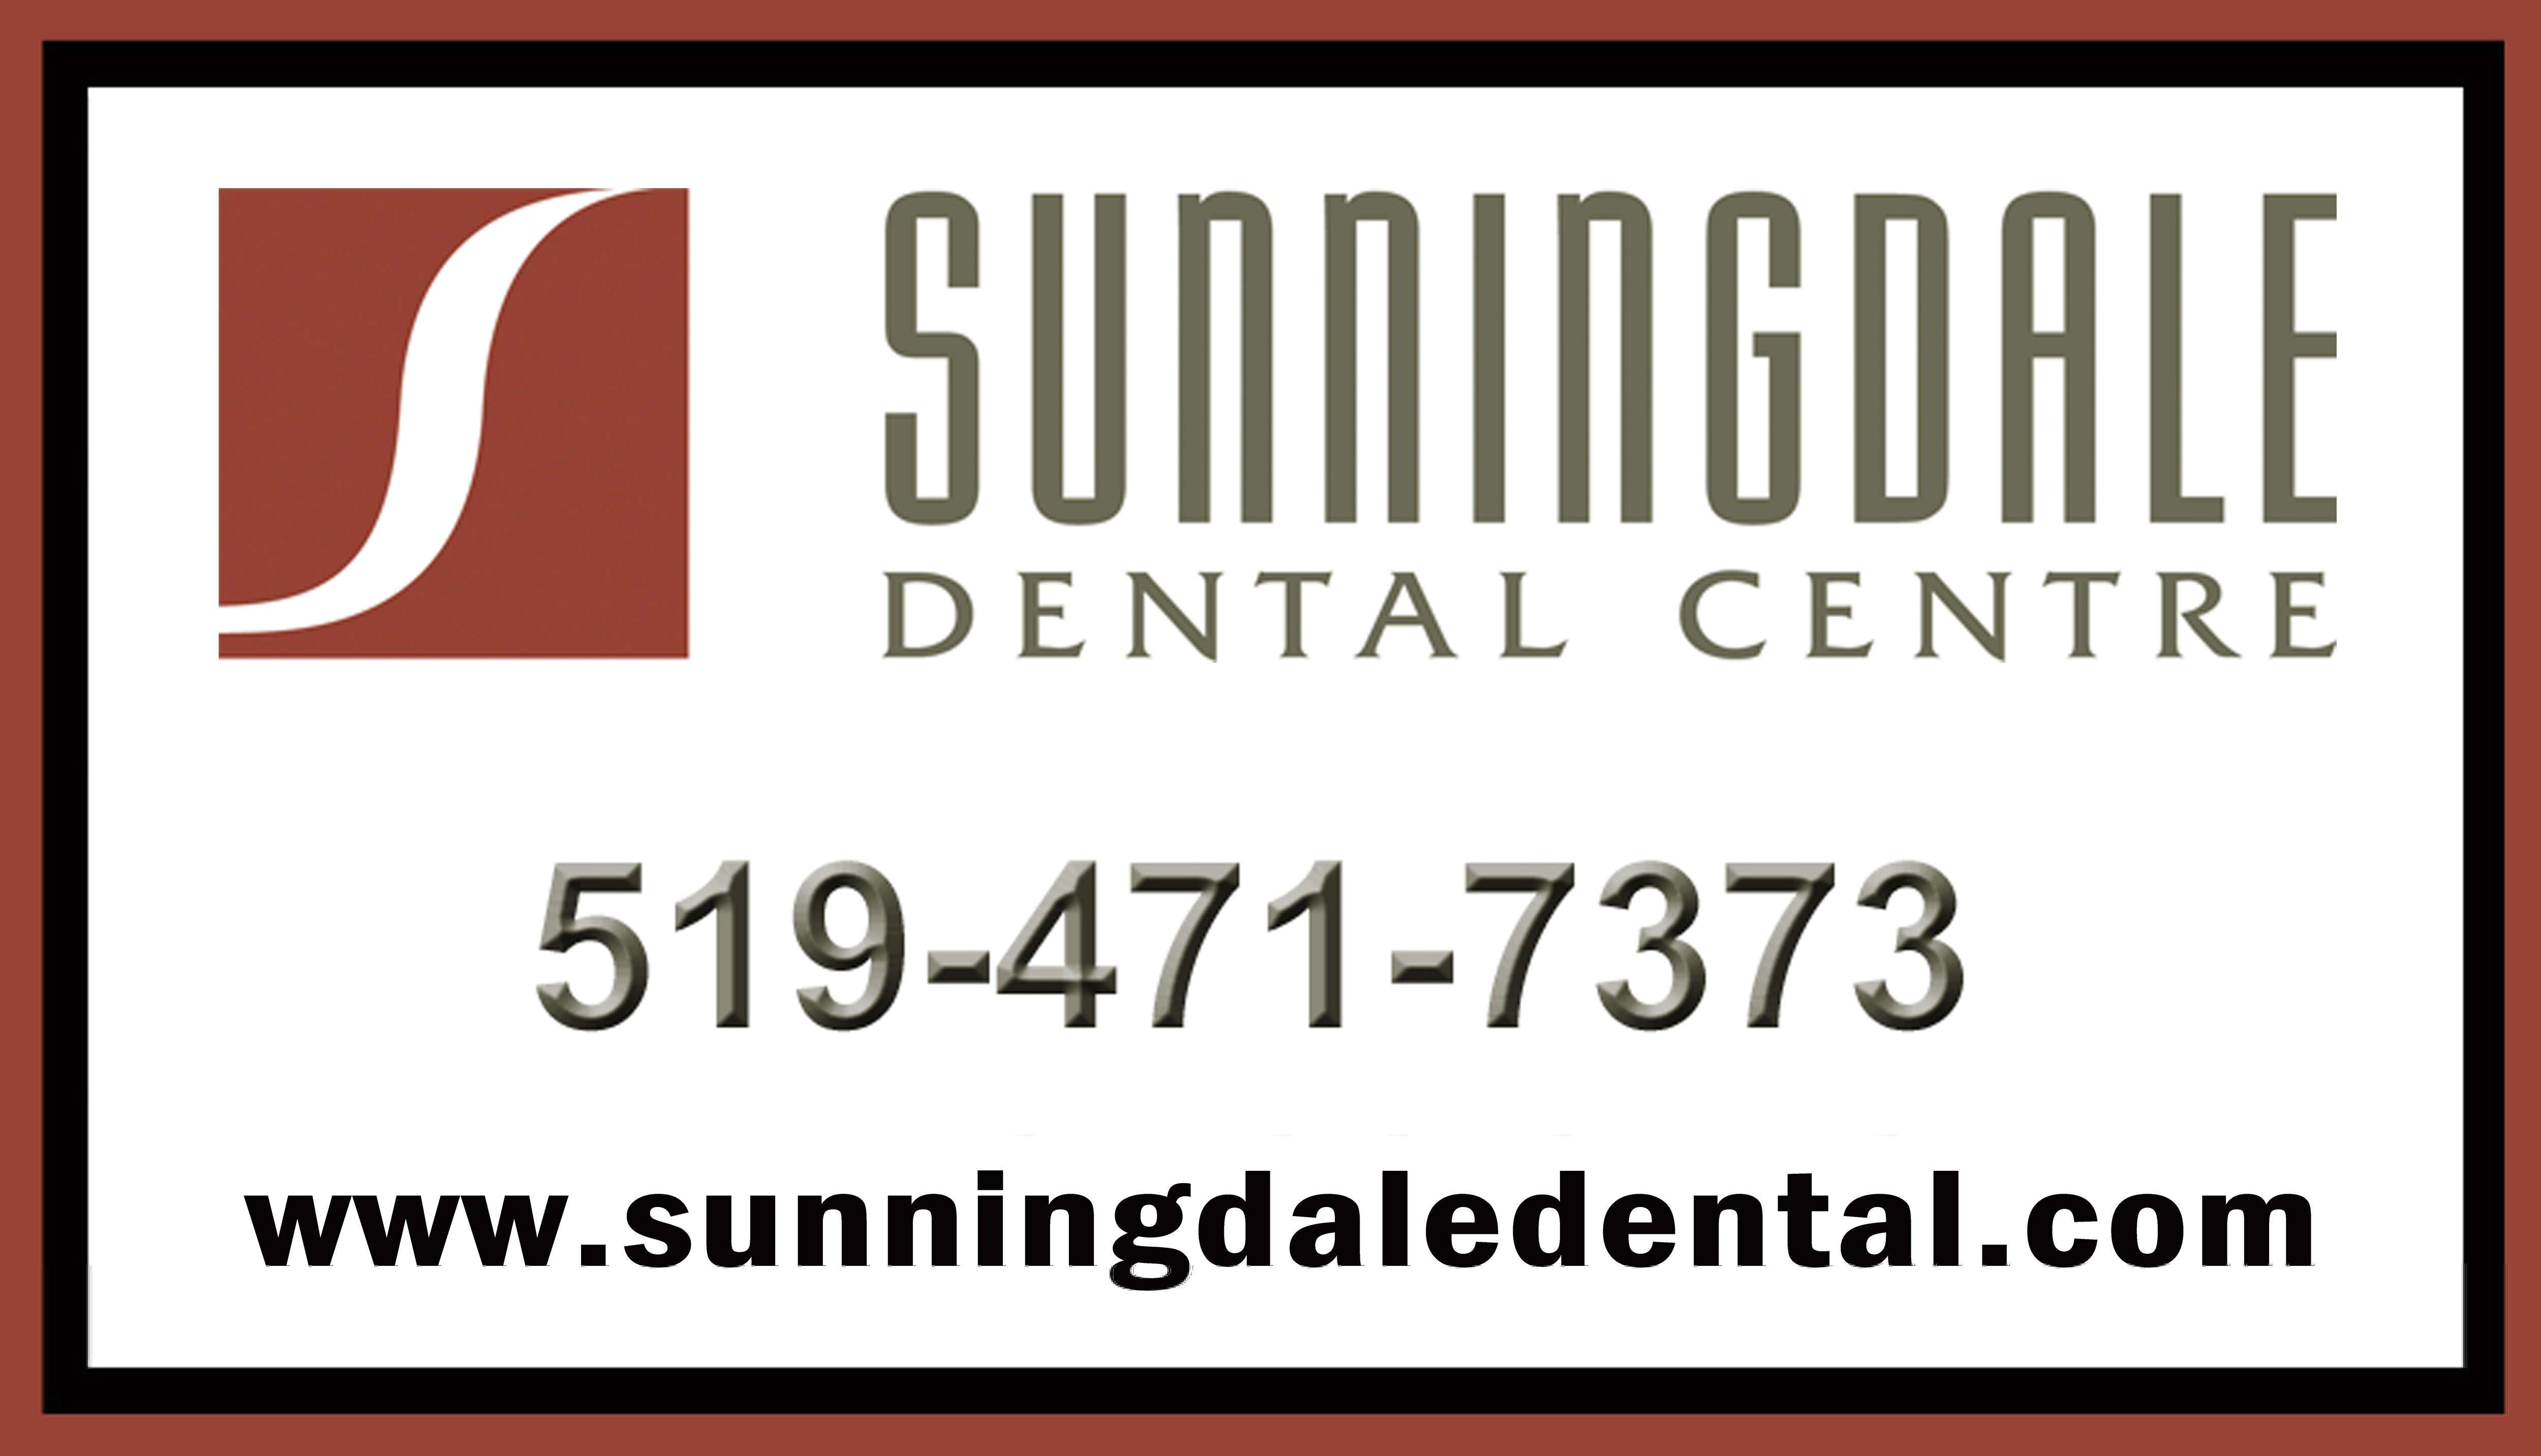 Sunningdale Dental Centre